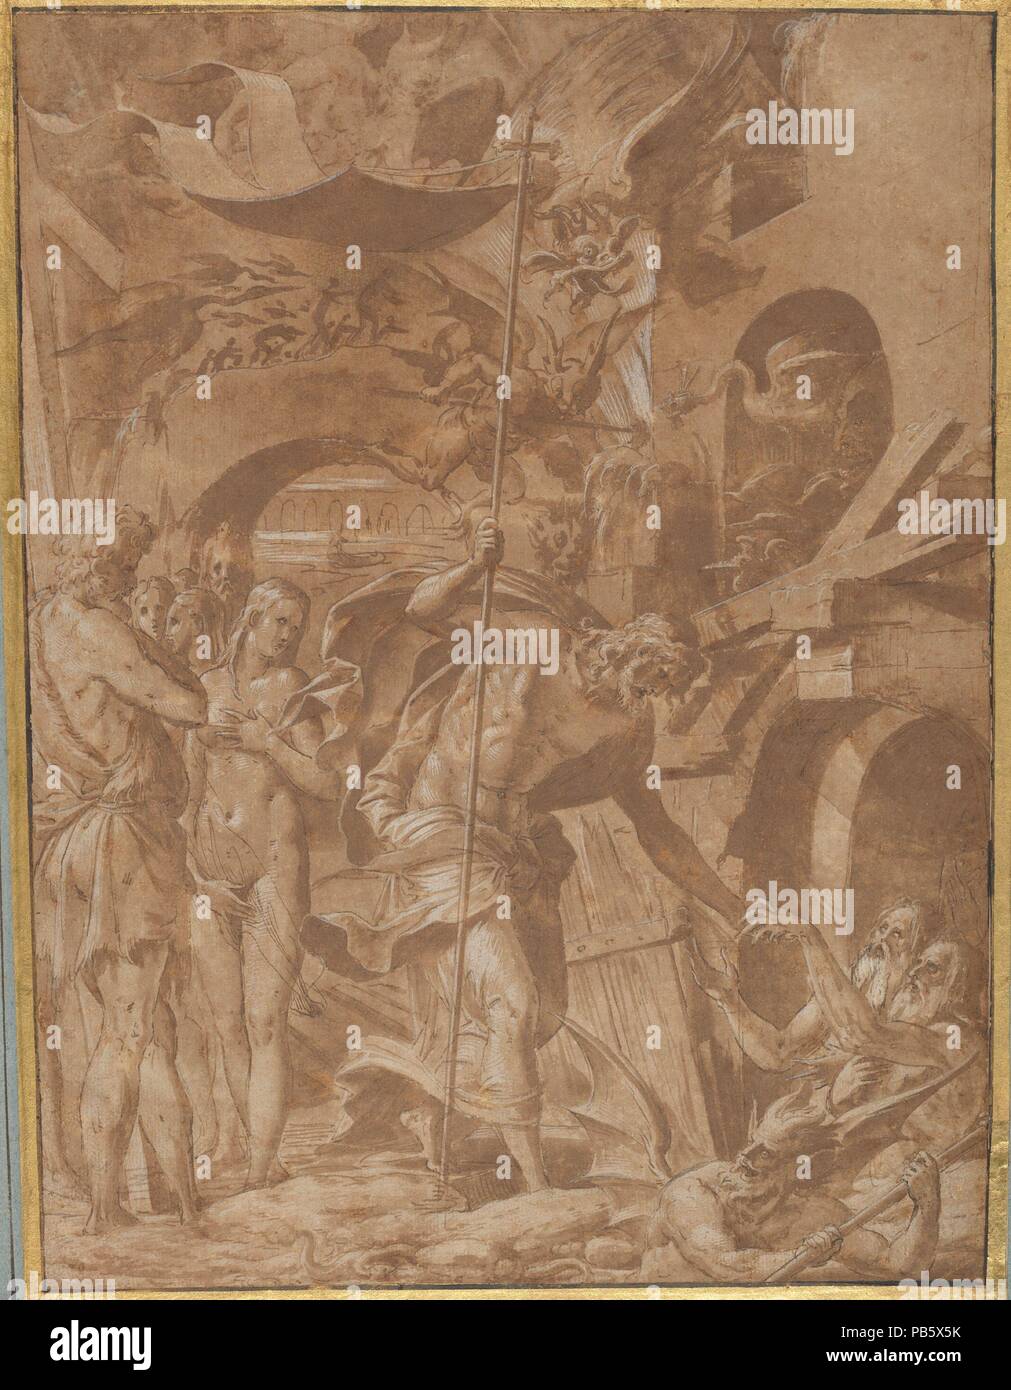 Le Christ dans les limbes. Artiste : Luca Penni (Italien, Florence 1500/1504-1557 Paris). Fiche Technique : Dimensions : 14 1/2 x 10 5/8 in. (36,8 × 27 cm). Date : ca.1547-48. Formé dans l'atelier de Raphaël (1483-1520) à Rome, Luca Penni puis aidé son beau-frère Perino del Vaga (1501-1547) dans la région de Lucques et Gênes, avant de se rendre en France autour de 1537-38, plus tard se joindre à Rosso Fiorentino (1494-1540) et Henri le Sidaner (1504-1570) de travailler au service du roi de France, François I. Ce dessin a été récemment découvertes jusqu'à récemment que l'on croit être perdu : c'est un splendide exemple de Penni est fluide mature styl Banque D'Images